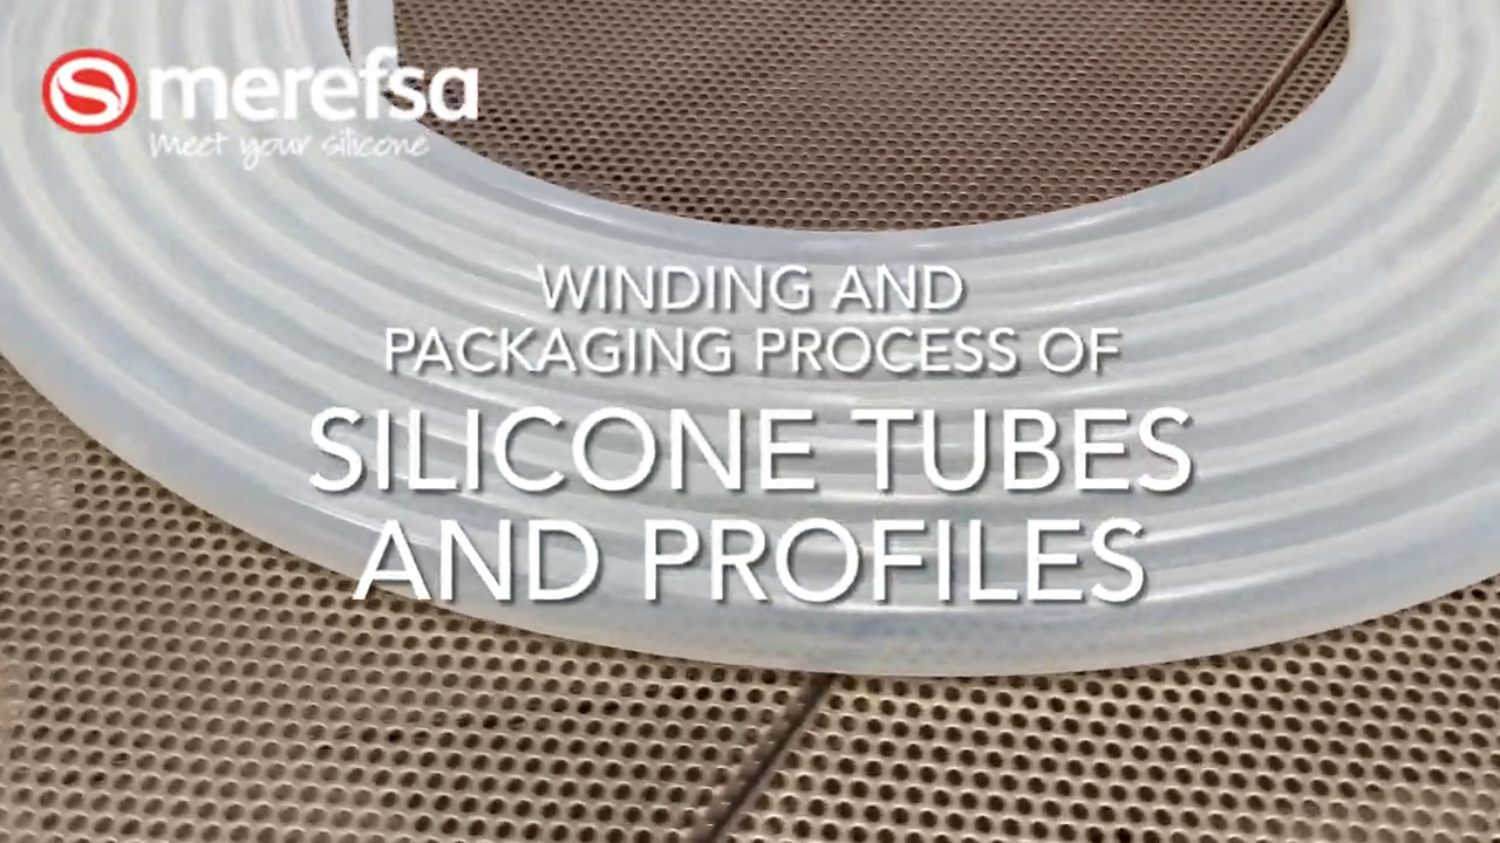 Proceso de enrollado y empaquetado de tubos y perfiles de silicona